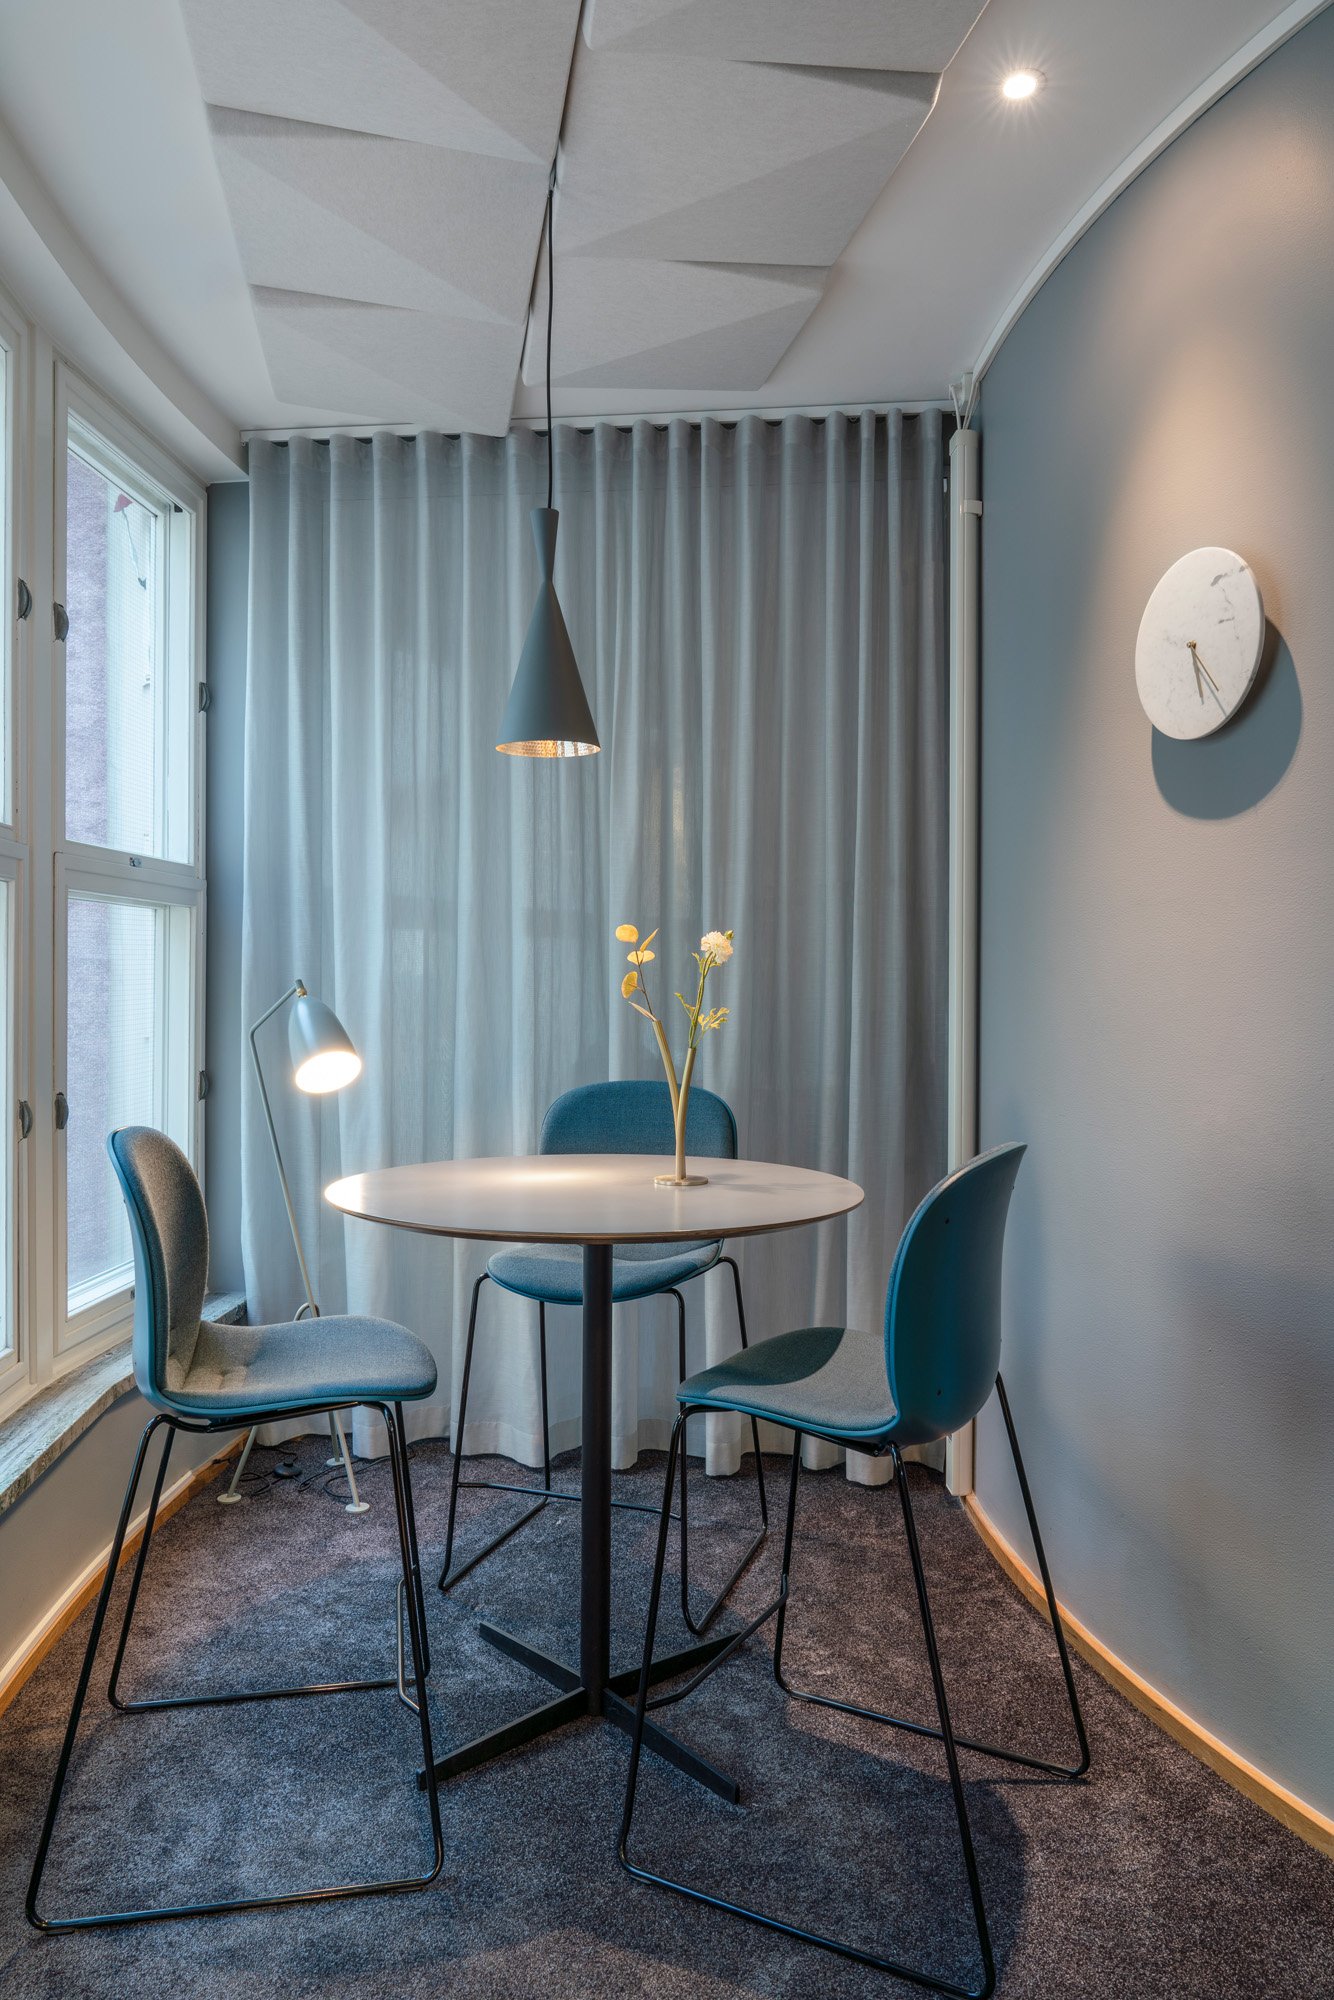 图片[12]|私募股权公司办公室——斯德哥尔摩|ART-Arrakis | 建筑室内设计的创新与灵感